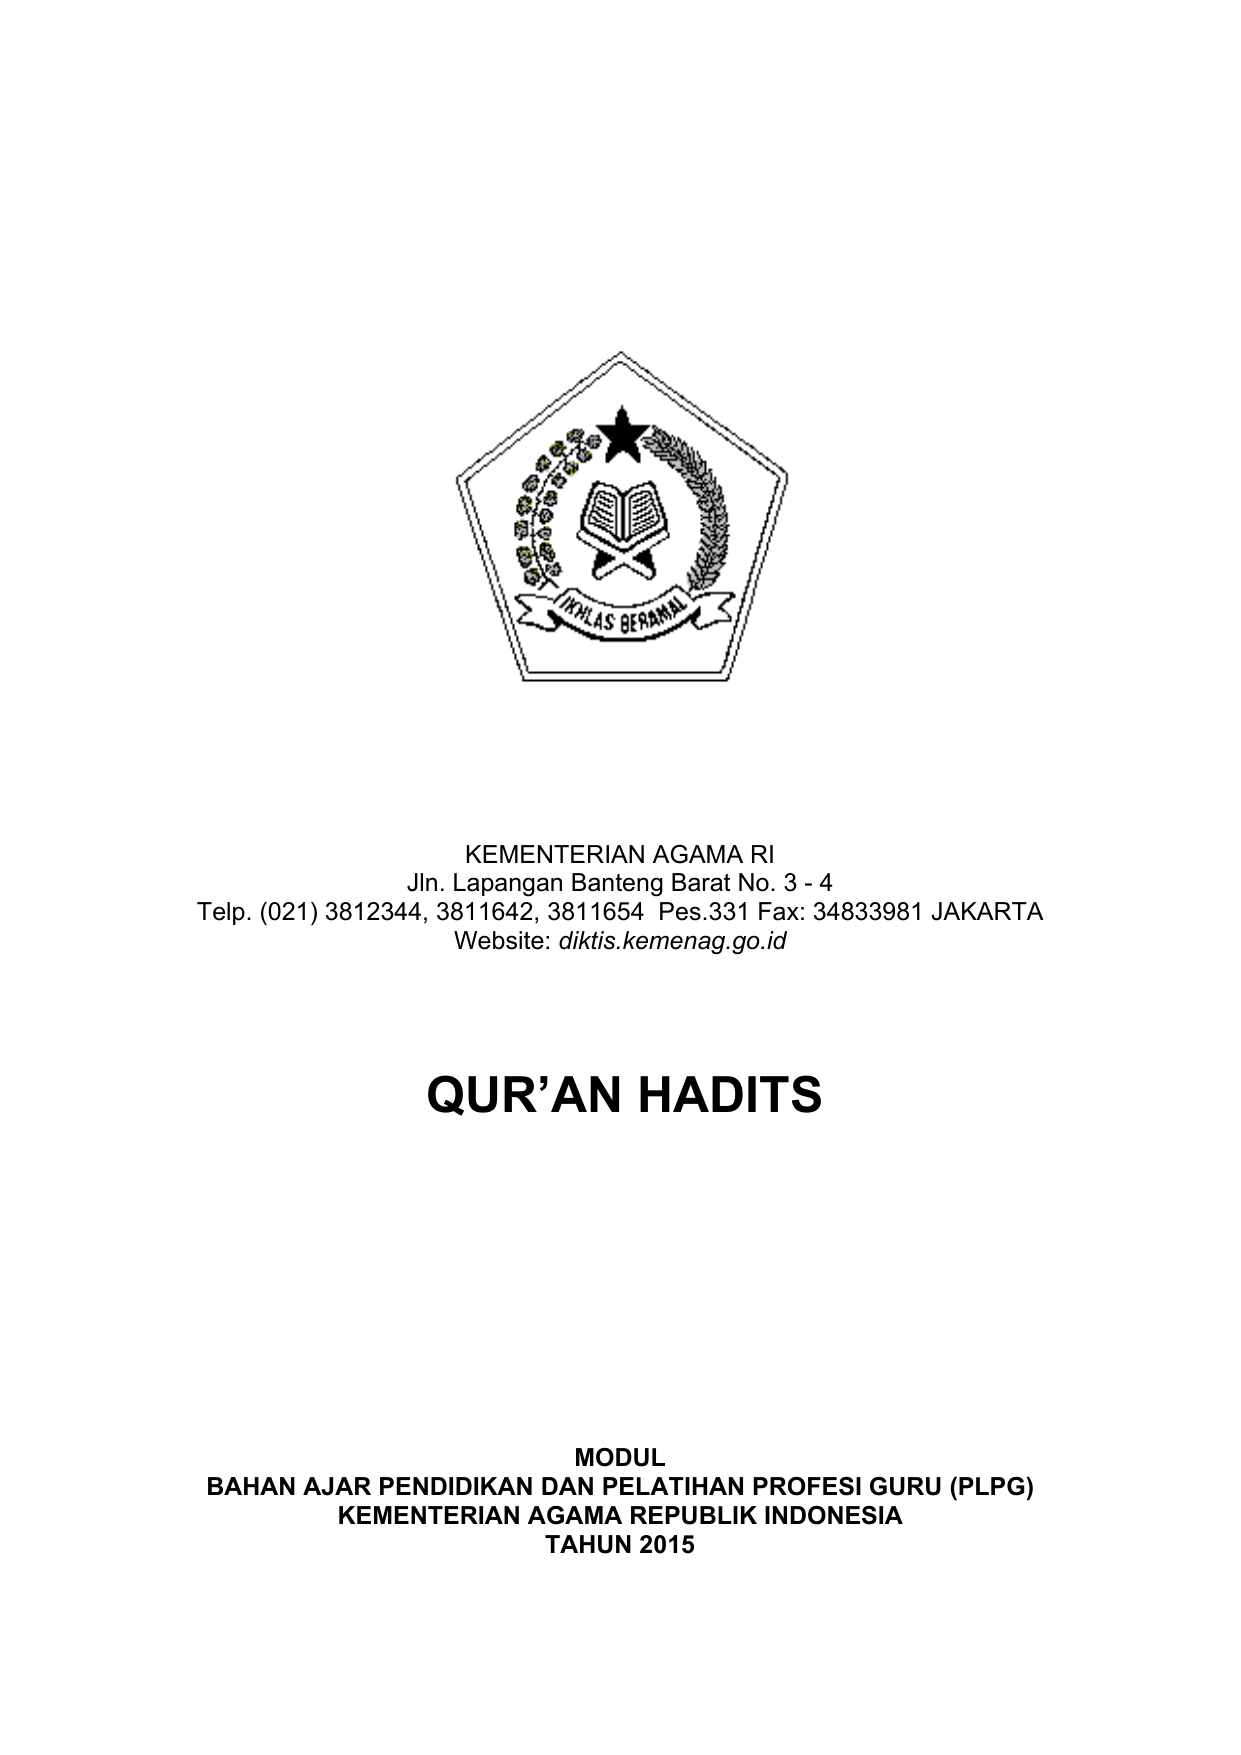 Quran Hadits